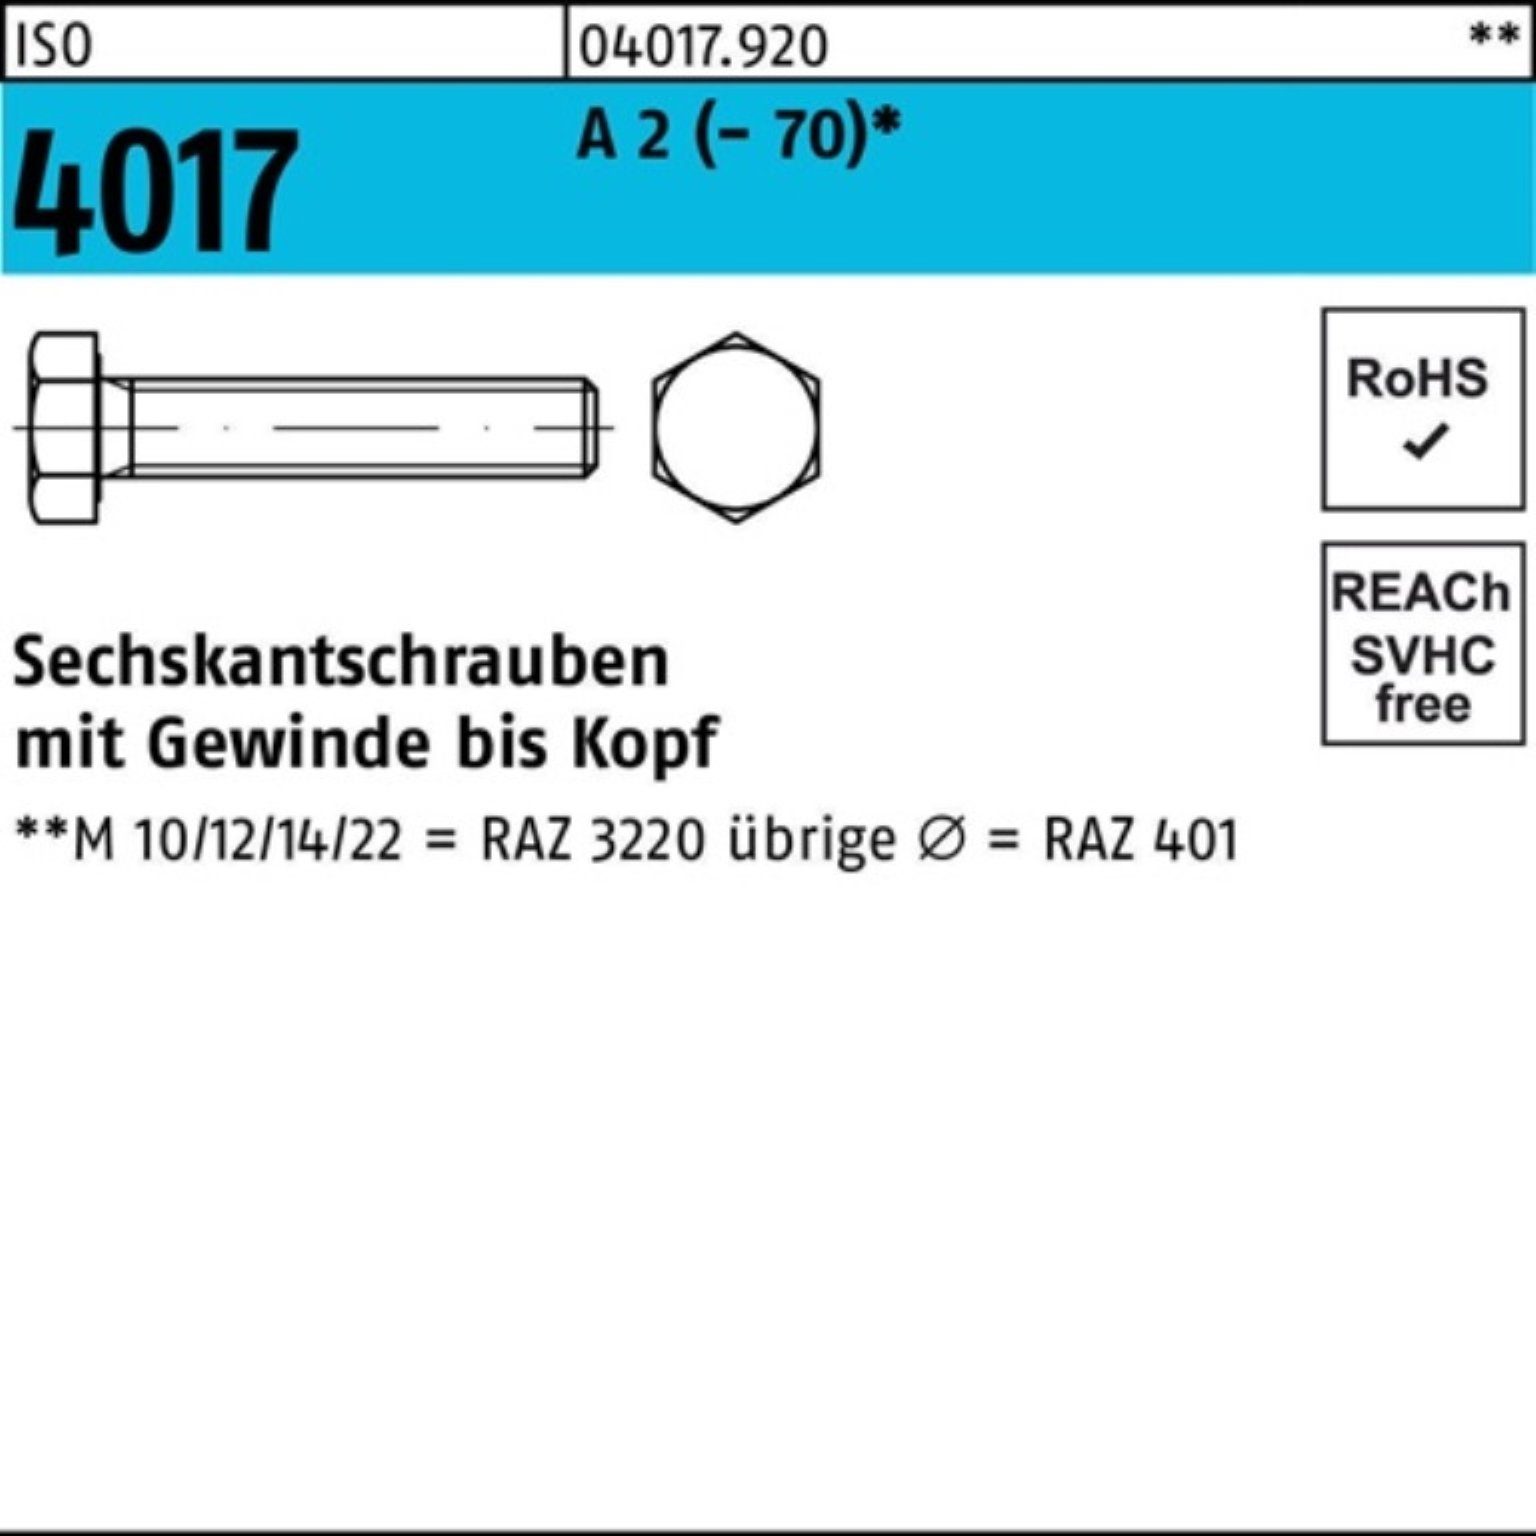 Bufab Sechskantschraube 100er Pack Sechskantschraube ISO 4017 VG M6x 65 A 2 (70) 100 Stück